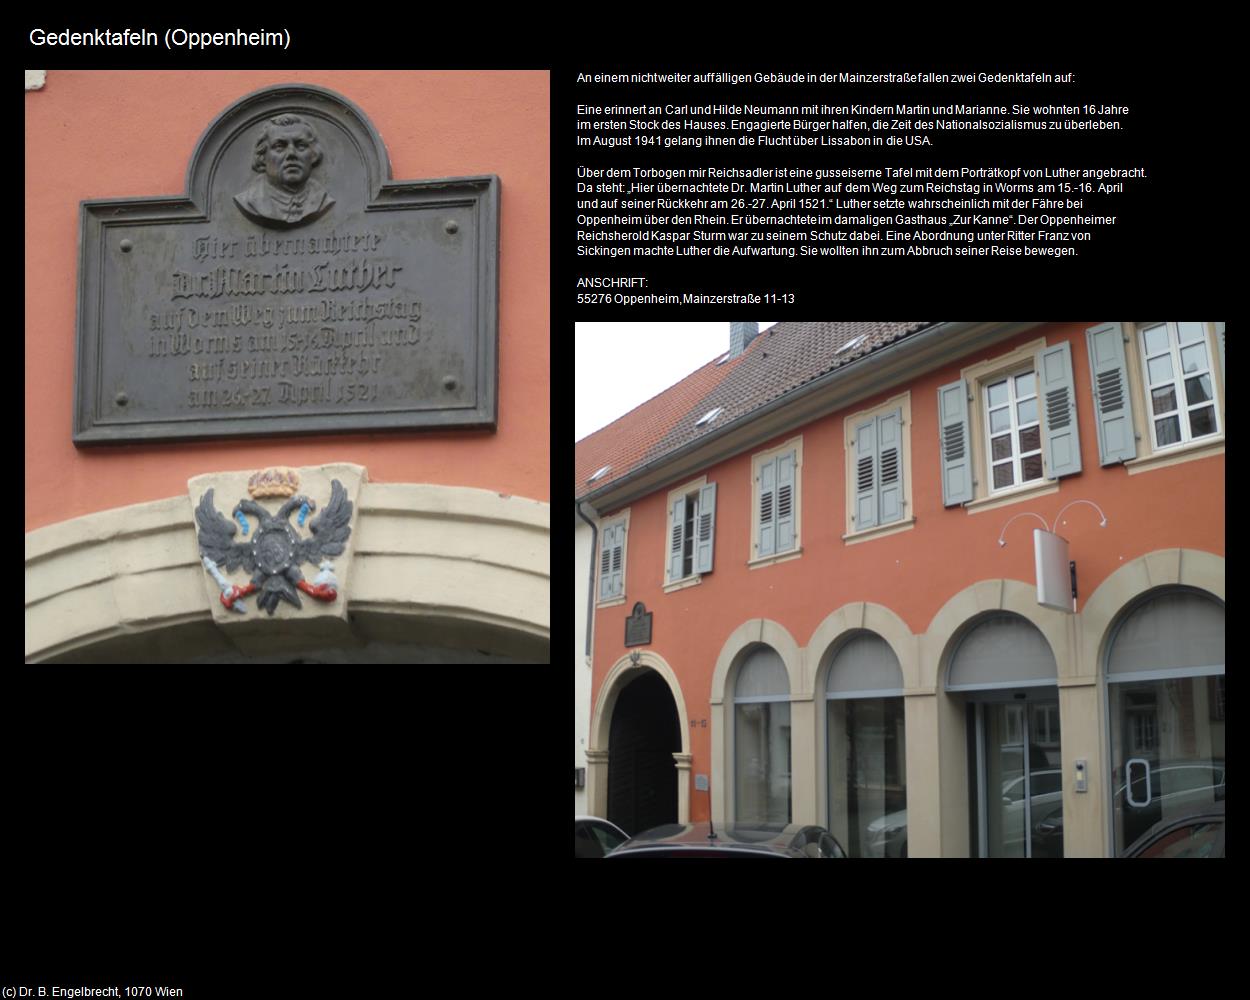 Gedenktafeln (Oppenheim (DEU-RP)) in RHEINLAND-PFALZ und SAARLAND